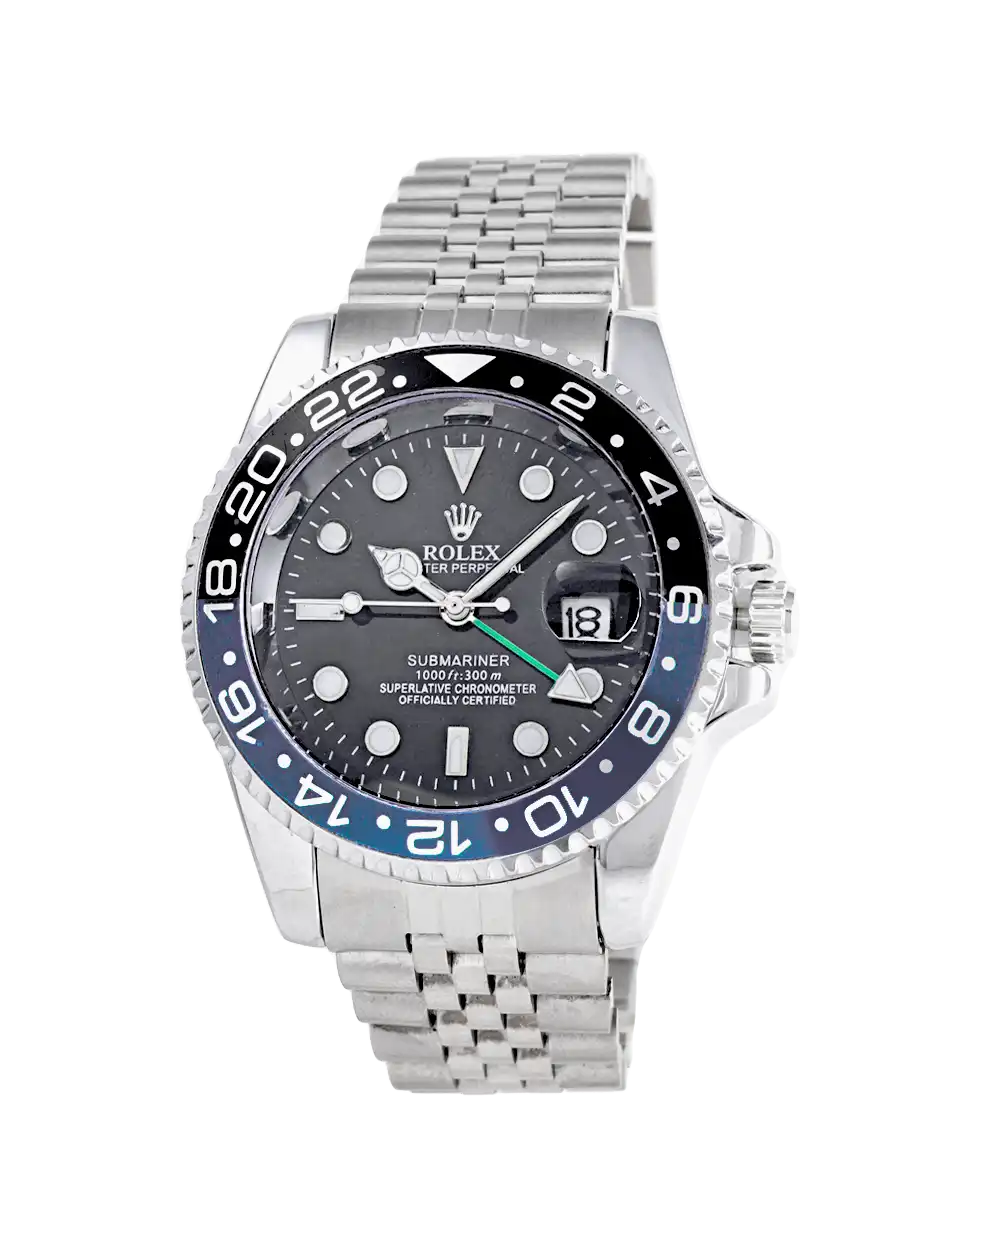 خرید ساعت مچی مردانه رولکس ROLEX طرح ساب مارین مدل 1654 با فریم مشکی آبی و بهترین قیمت به همراه ارسال رایگان و جعبه ی مخصوص کادویی